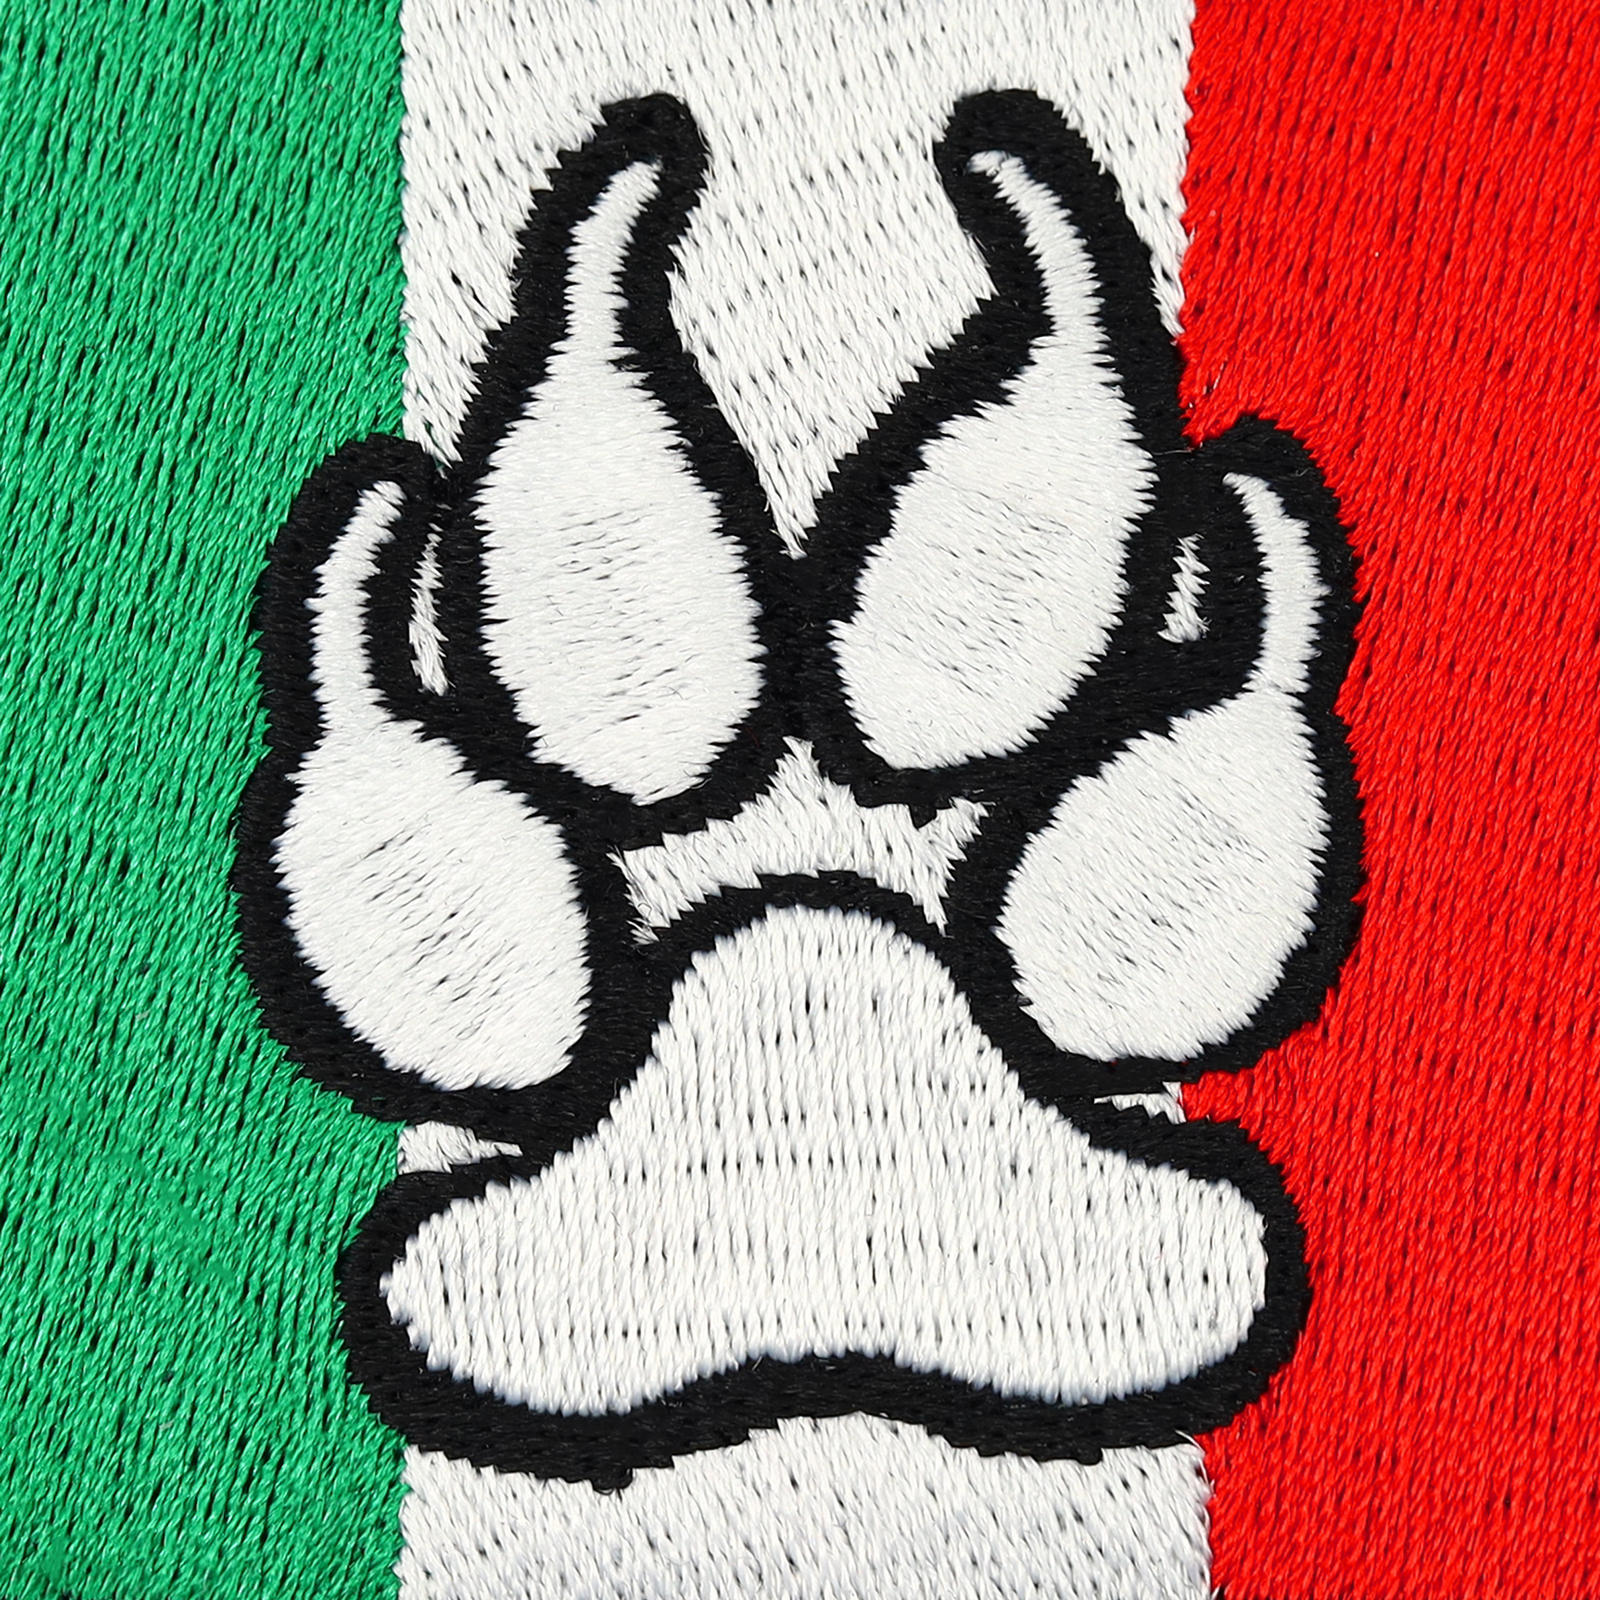 Italian K9 Flag mit Pfote - Patch